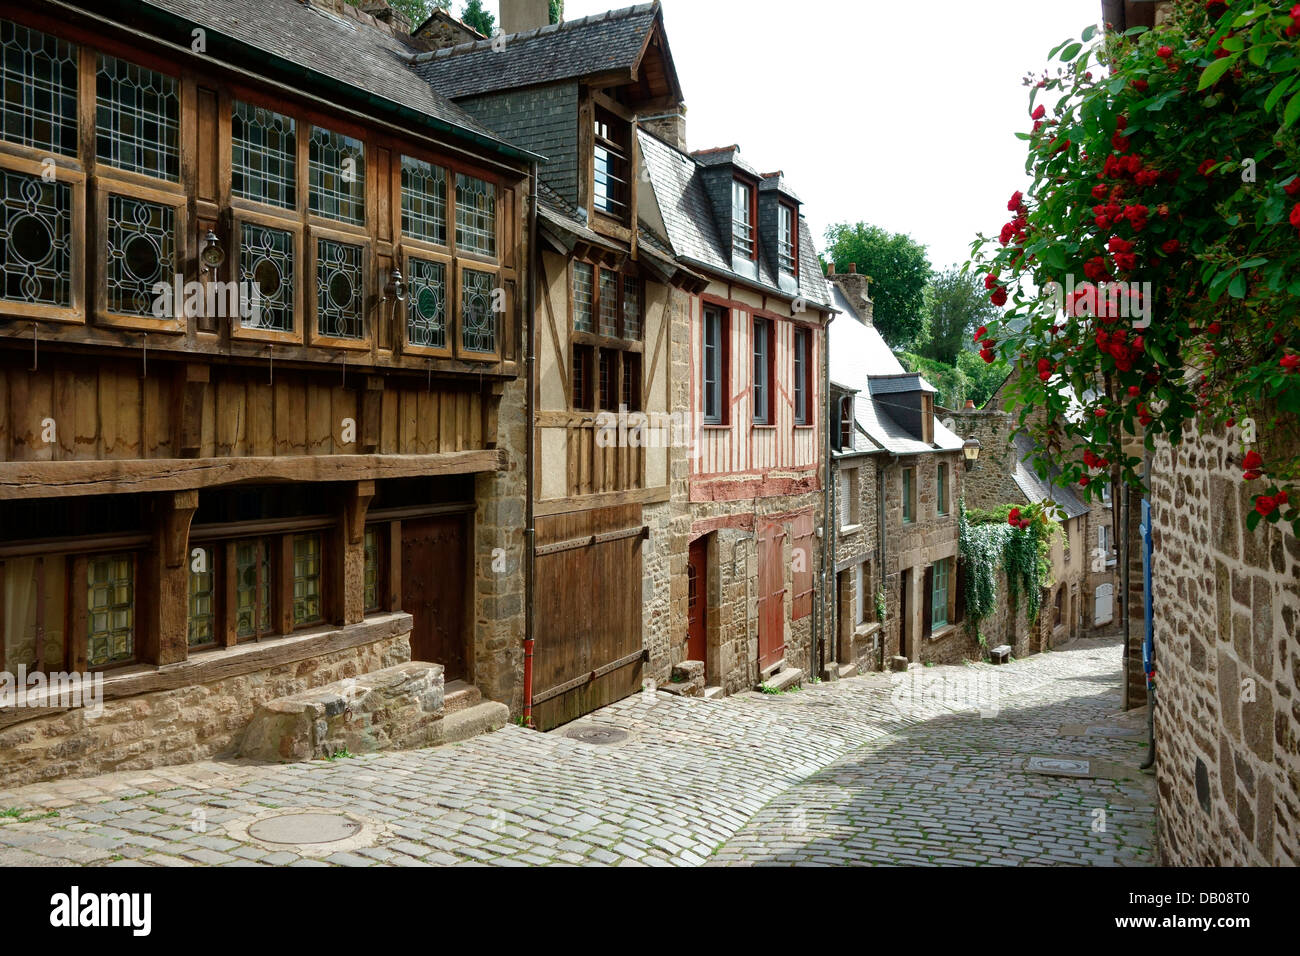 Die alten gepflasterten Straßen von Port von Dinan Frankreich Stockfoto